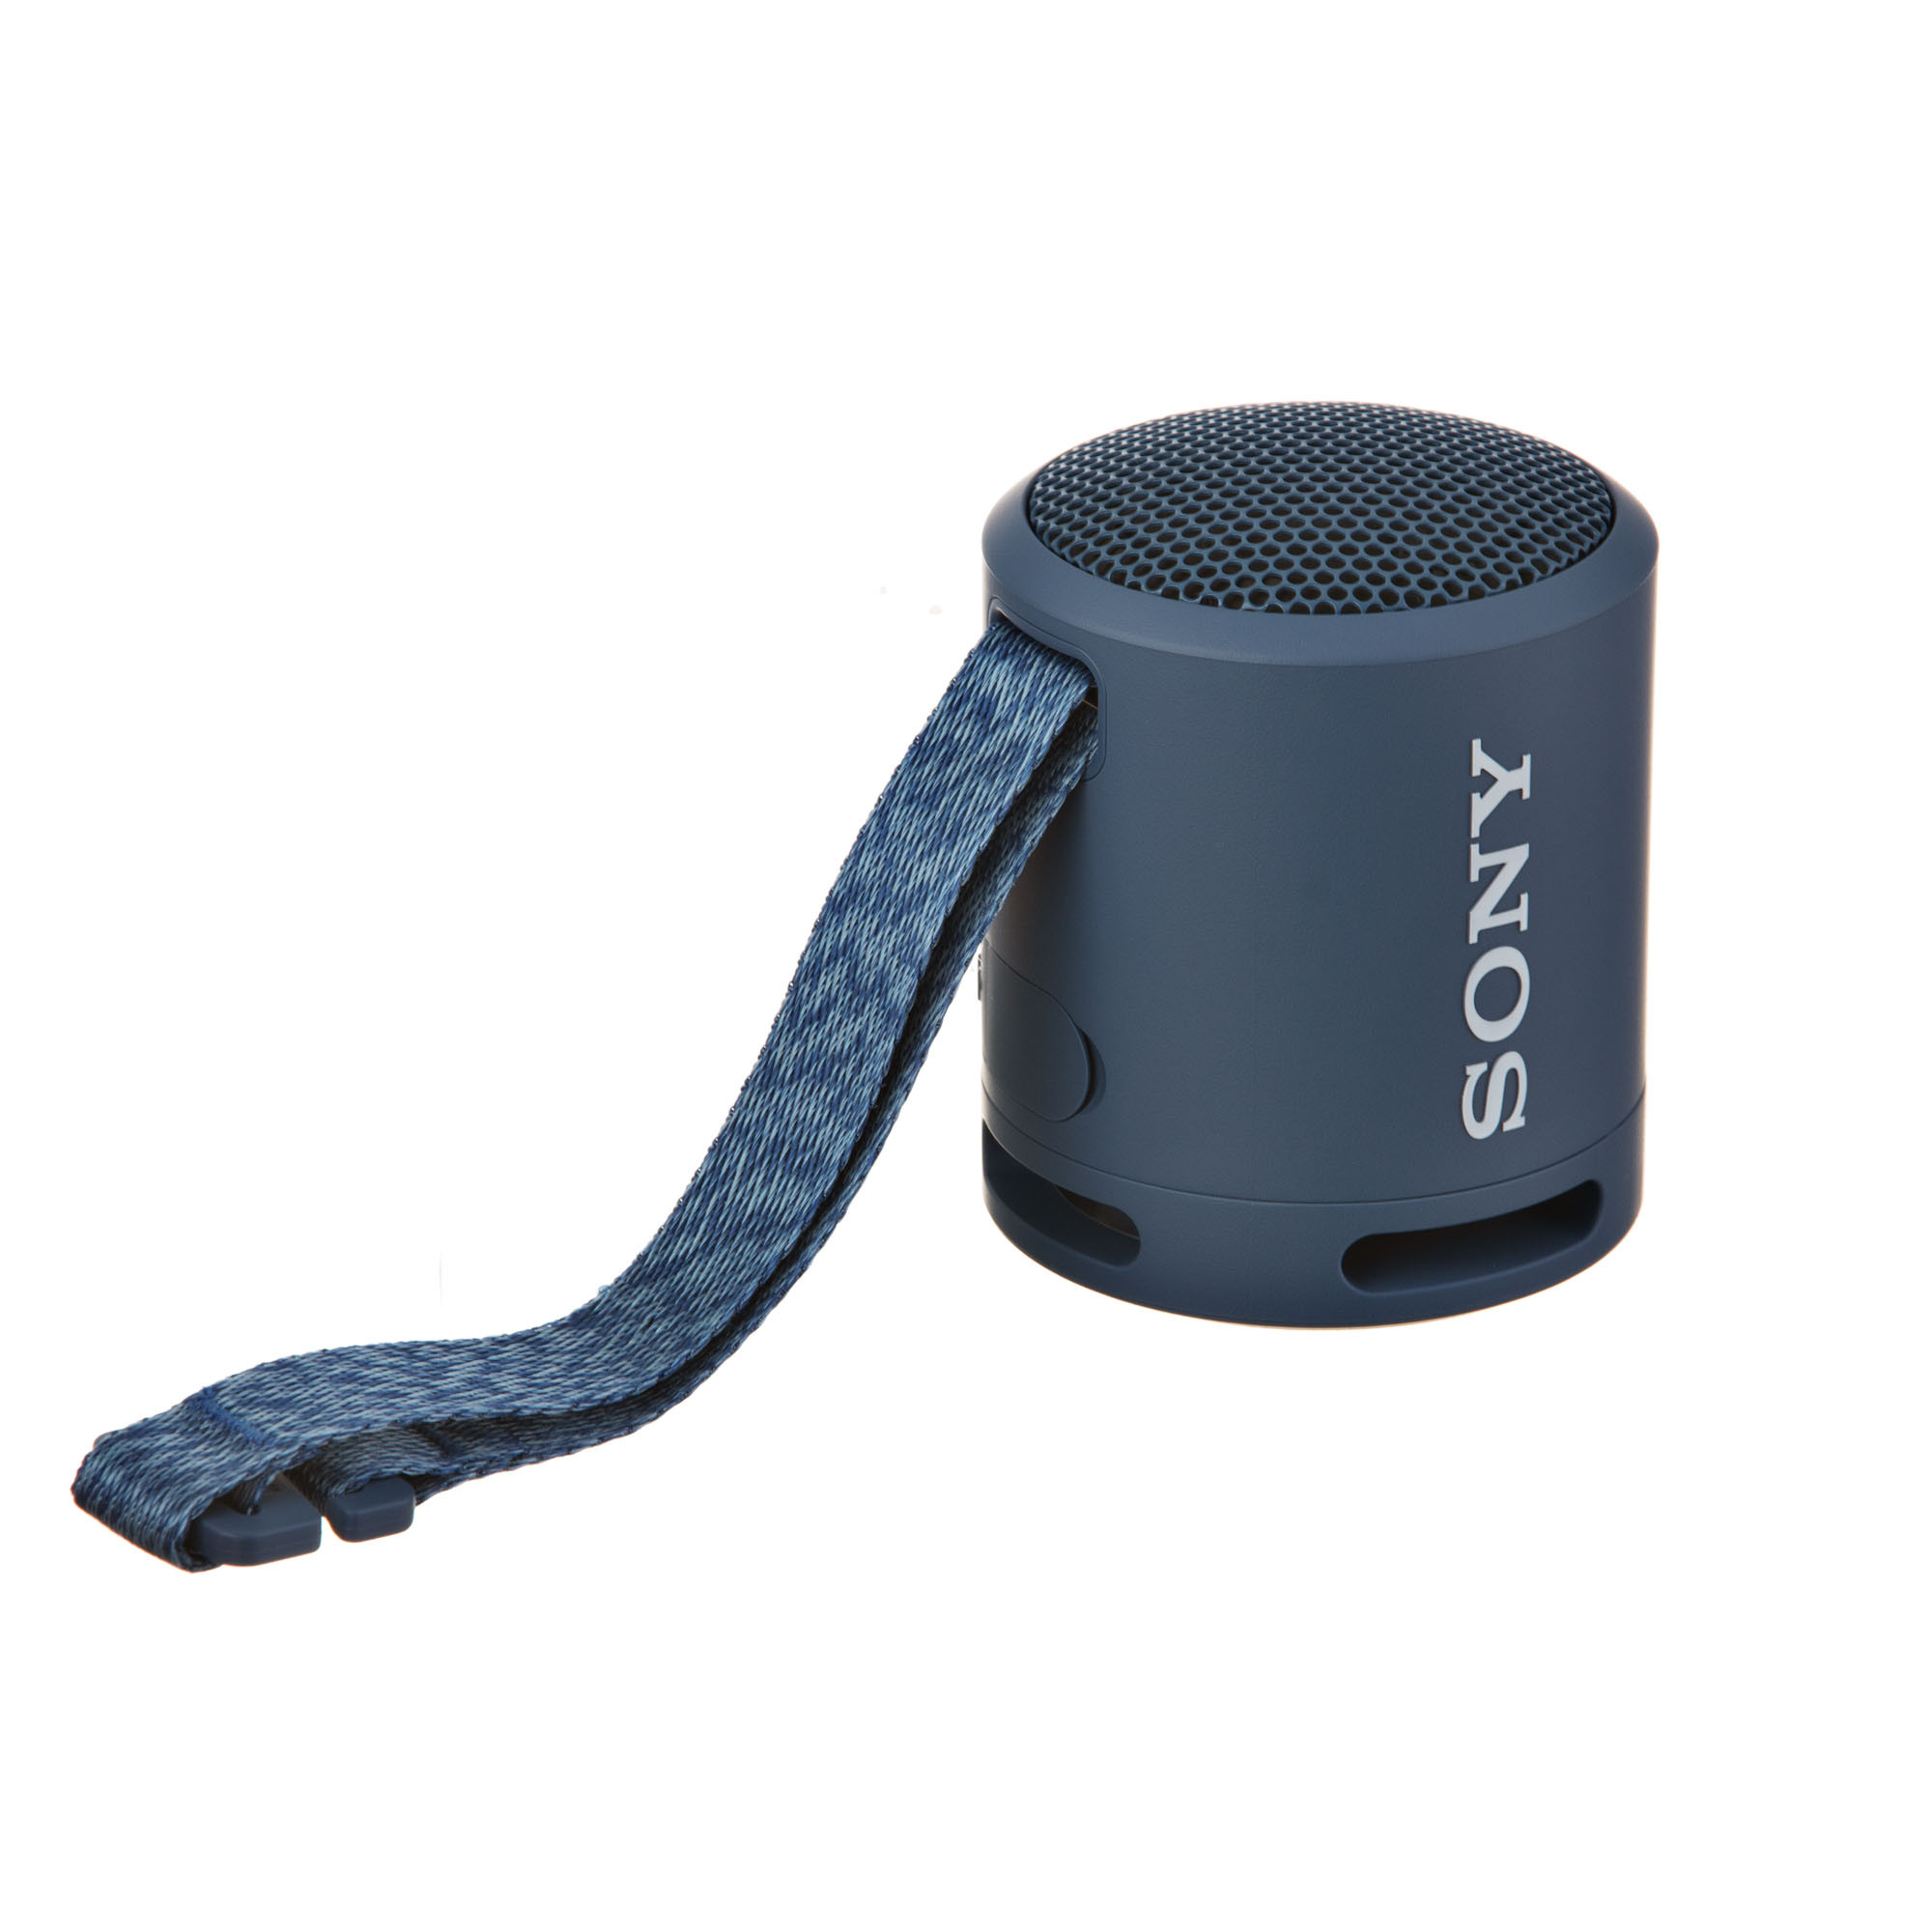 Sony SRS-XB13 Extra BASS Altavoz compacto portátil inalámbrico IP67  impermeable Bluetooth, azul claro (SRSXB13/L)